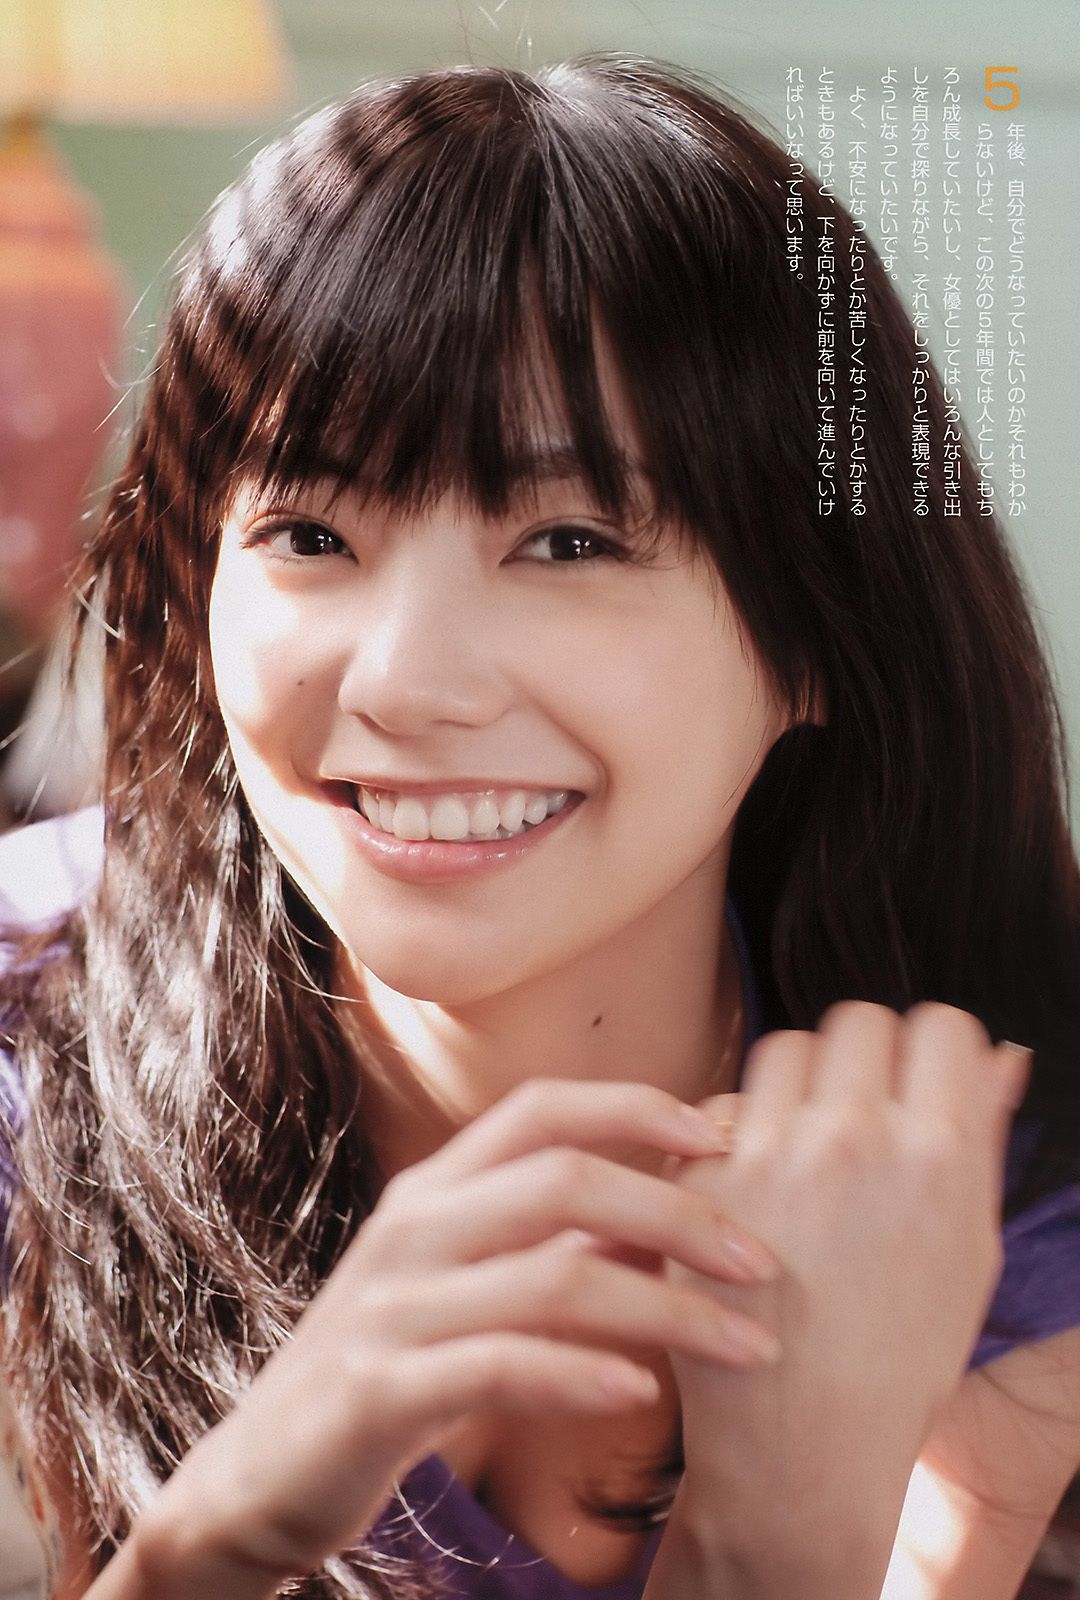 AKB48 小池里奈 奥仲麻琴 倉科カナ 大野いと 手塚纱掬 [Weekly Playboy] 2011年No.16 写真杂志/(37P)